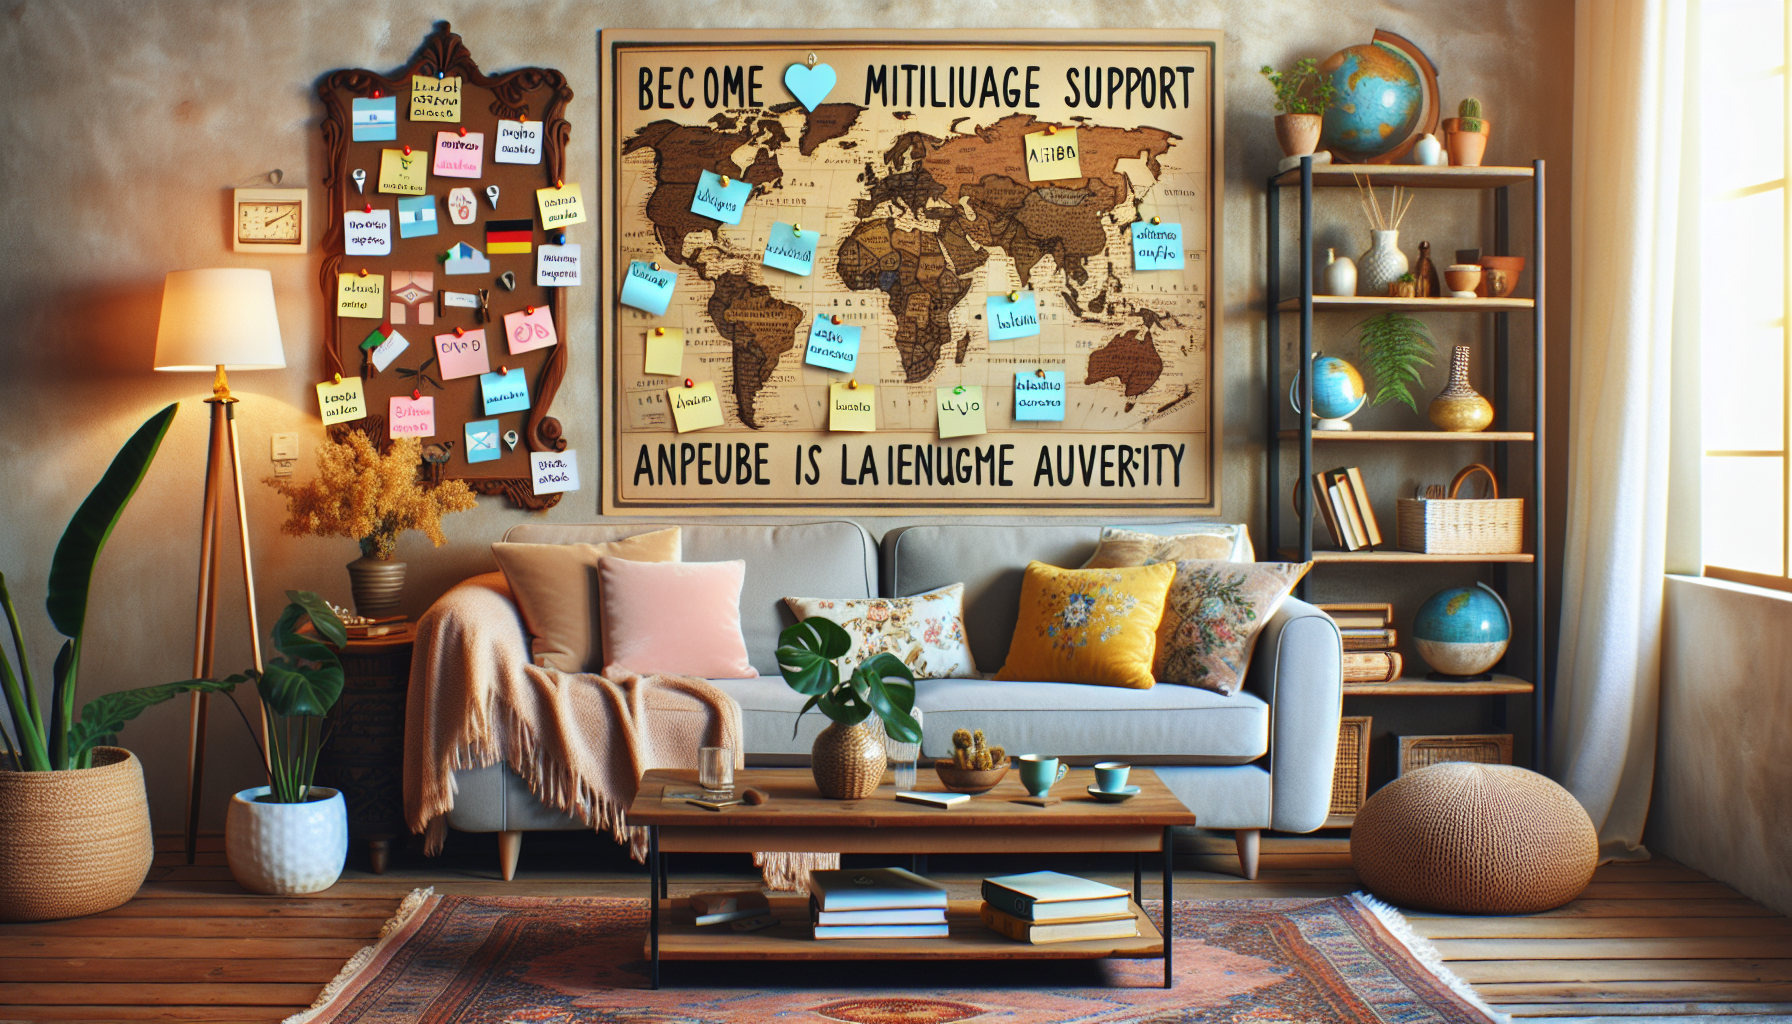 besoin d'assistance multilingue pour les hôtes airbnb ? découvrez comment obtenir de l'aide dans différentes langues pour gérer vos locations sur airbnb.